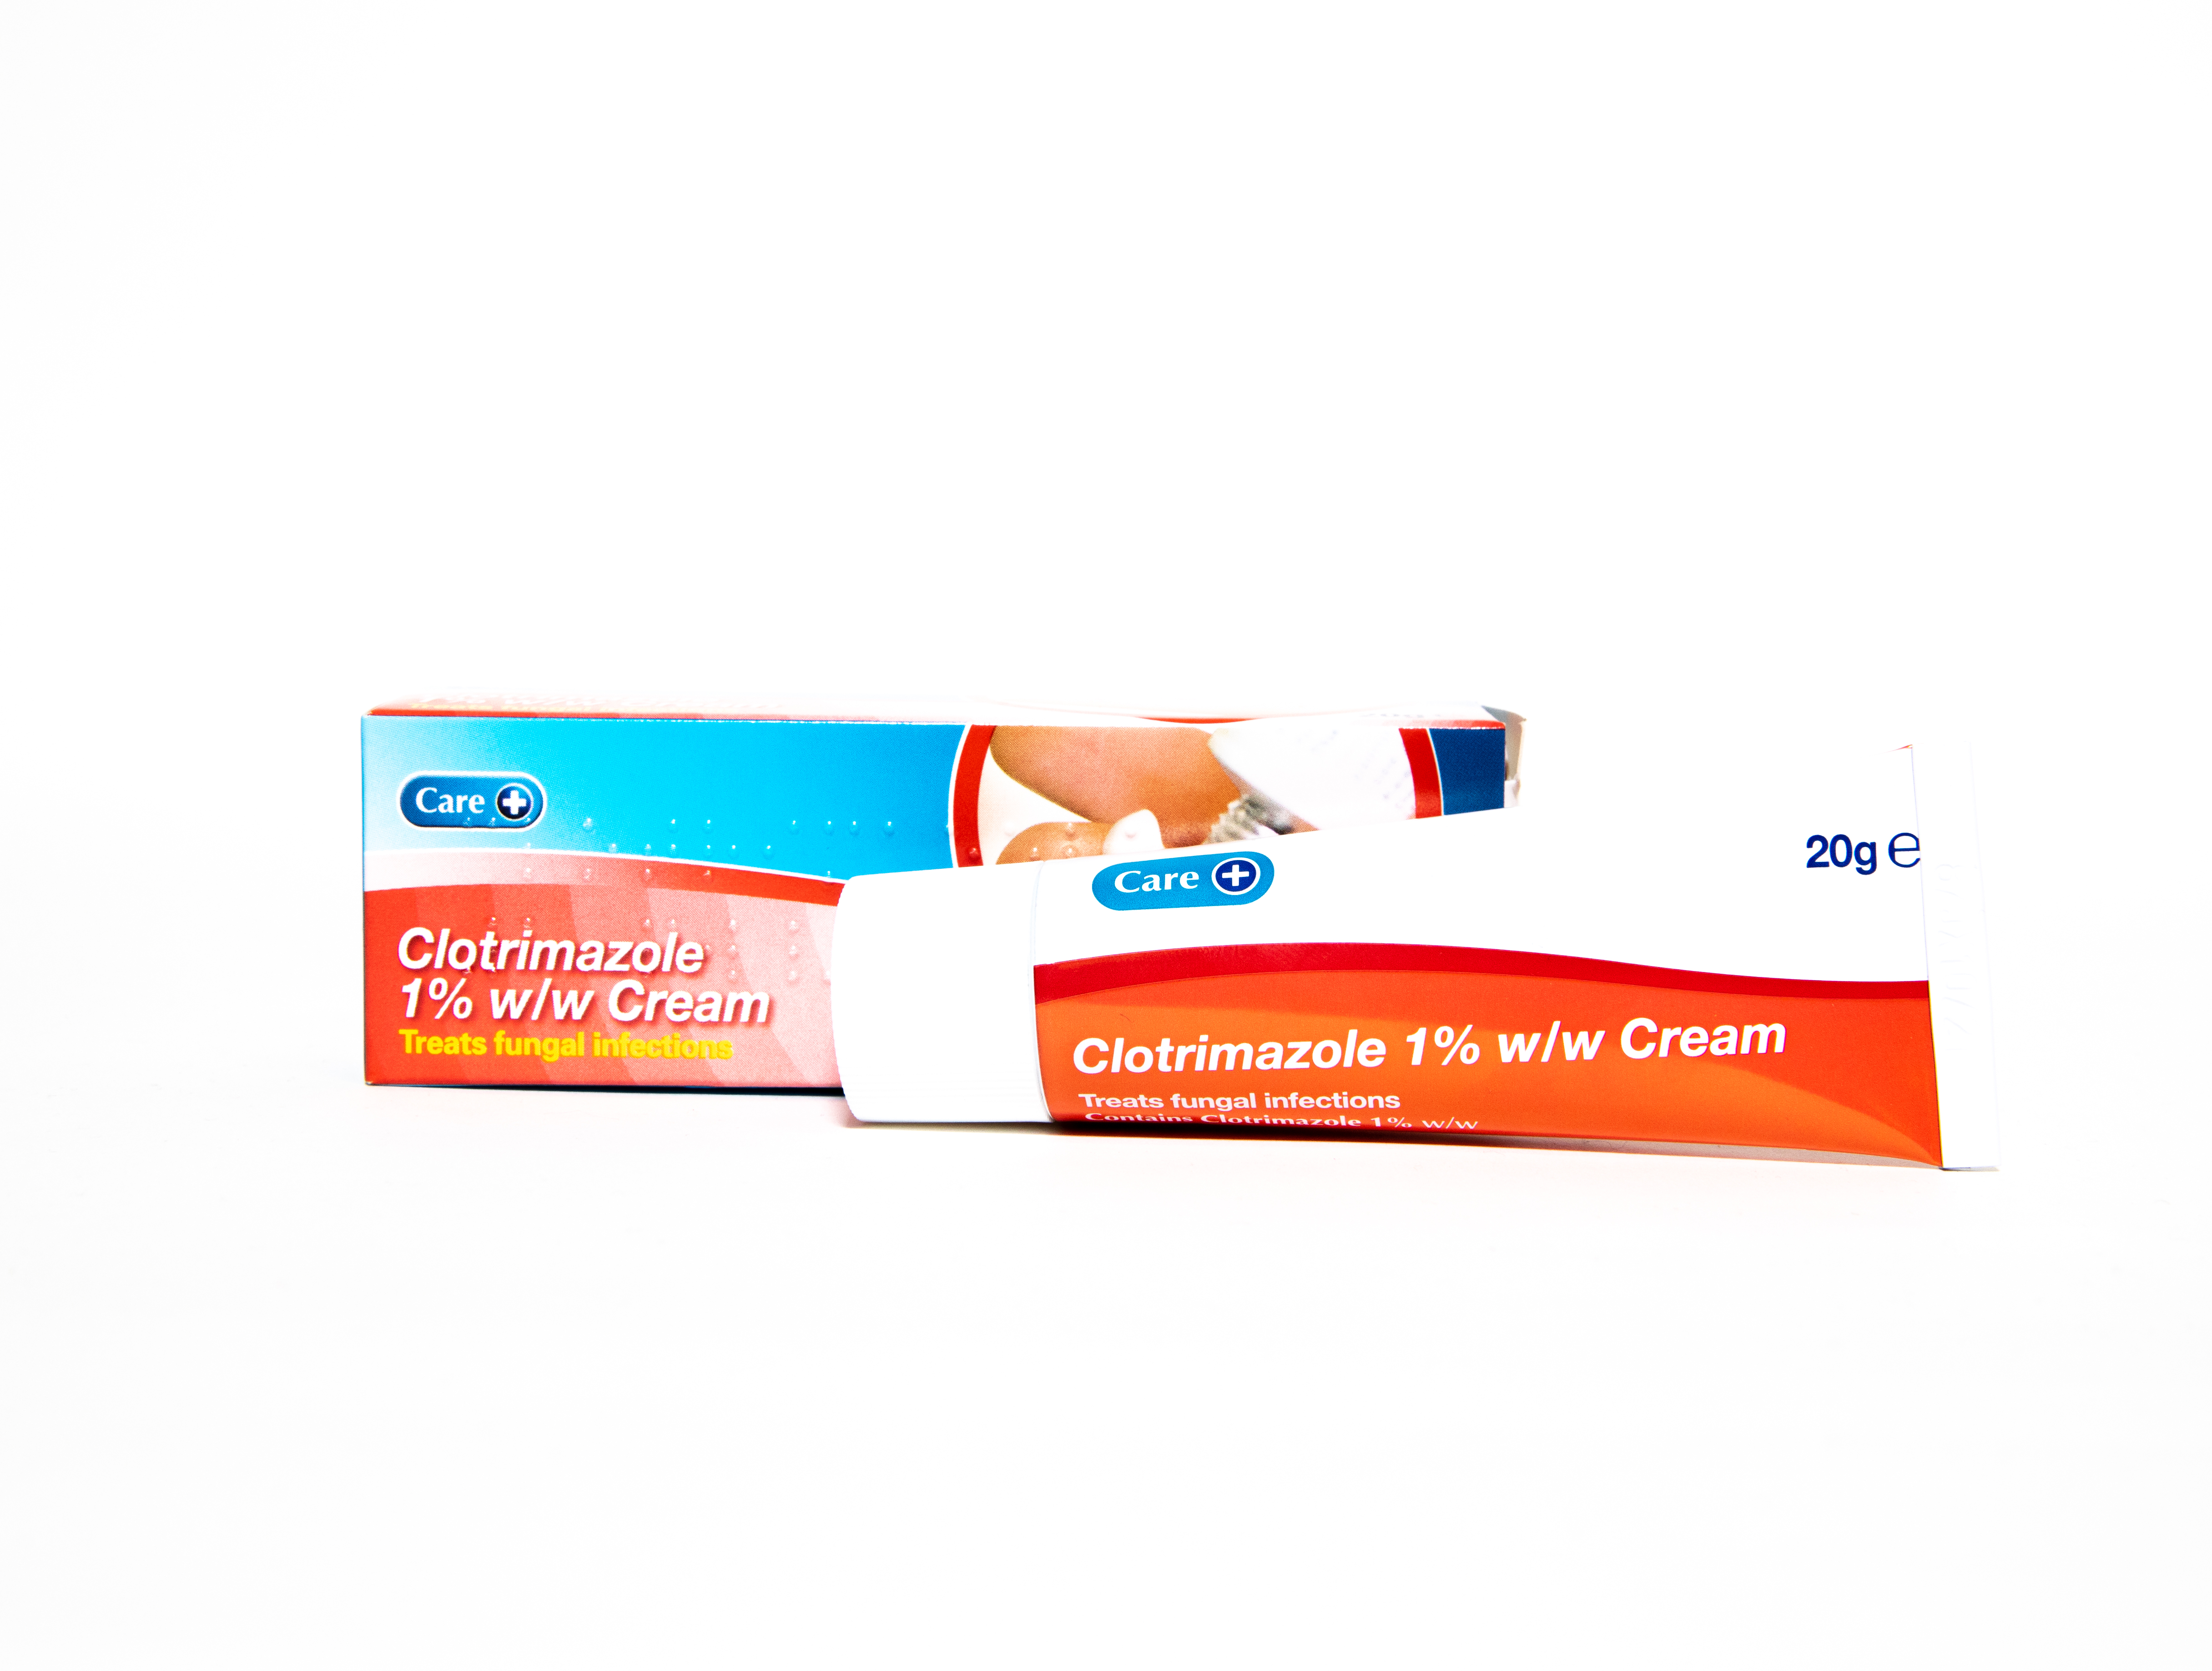 Clotrimazole Cream 1%